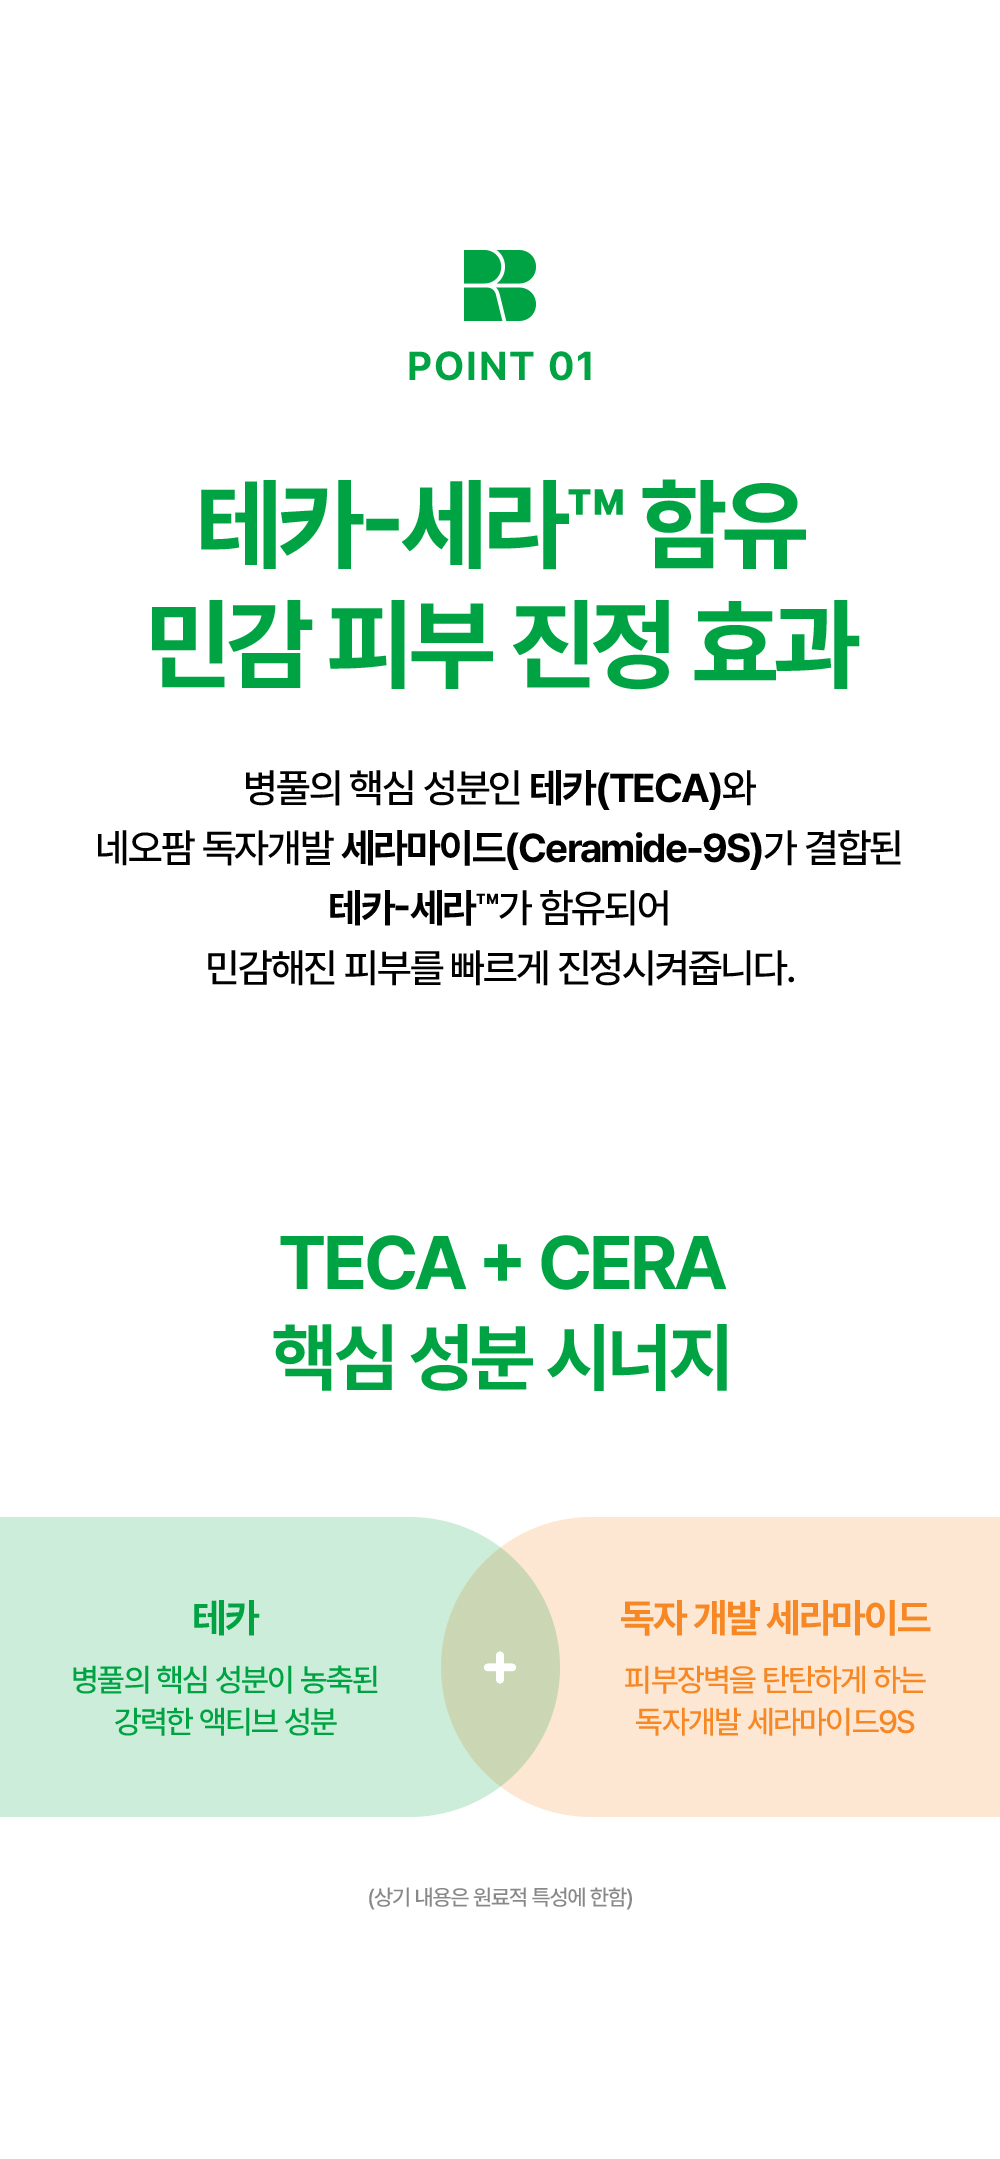 POINT 01. 테카-세라™ 함유 민감 피부 진정 효과